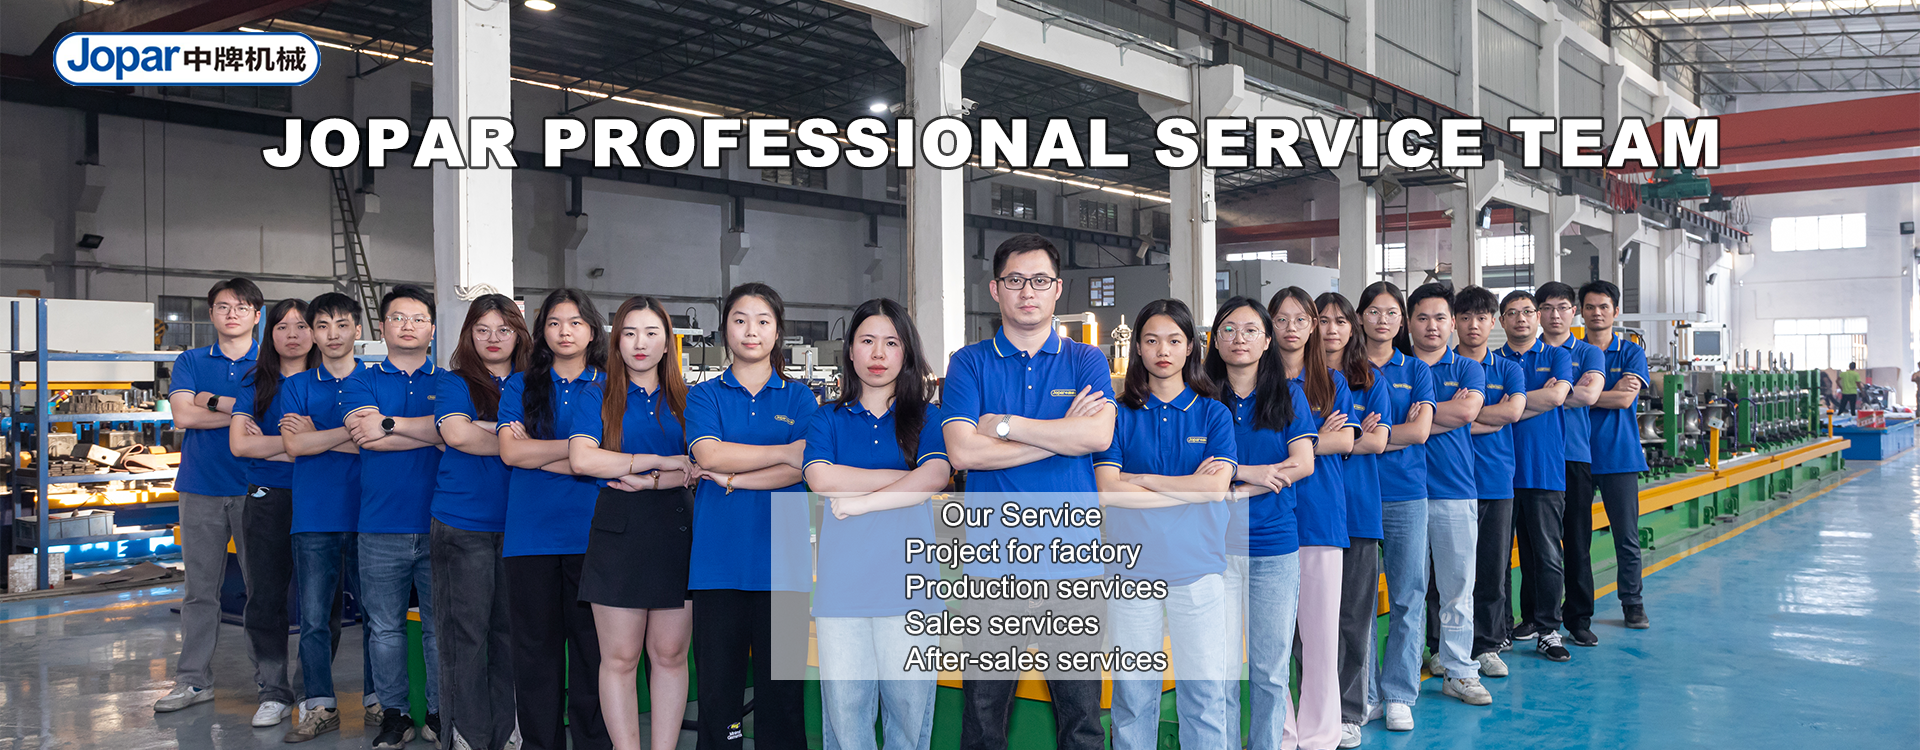 Jopar Professional Service Team